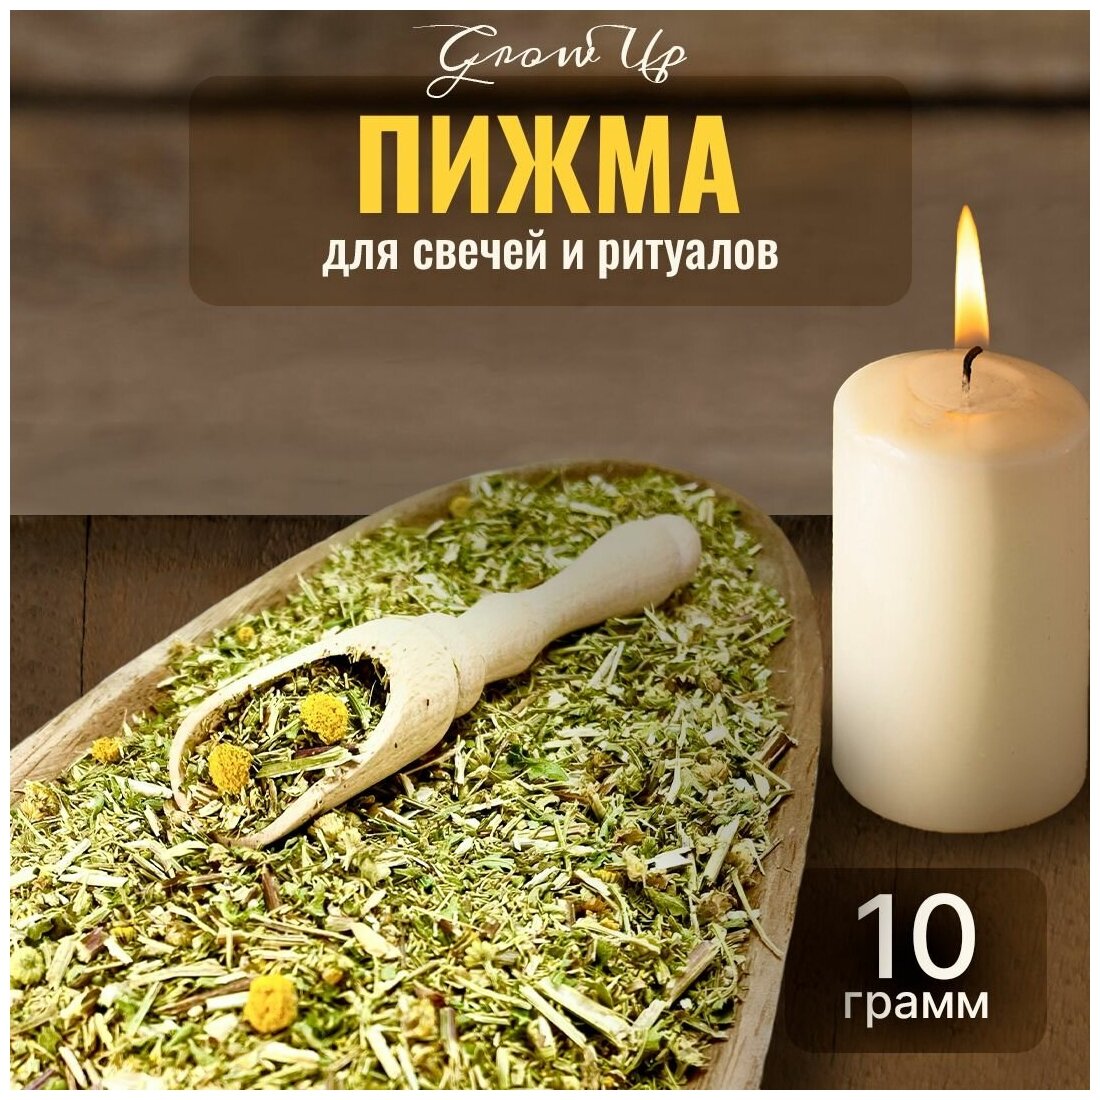 Сухая трава Пижма (трава) для свечей и ритуалов, 10 гр